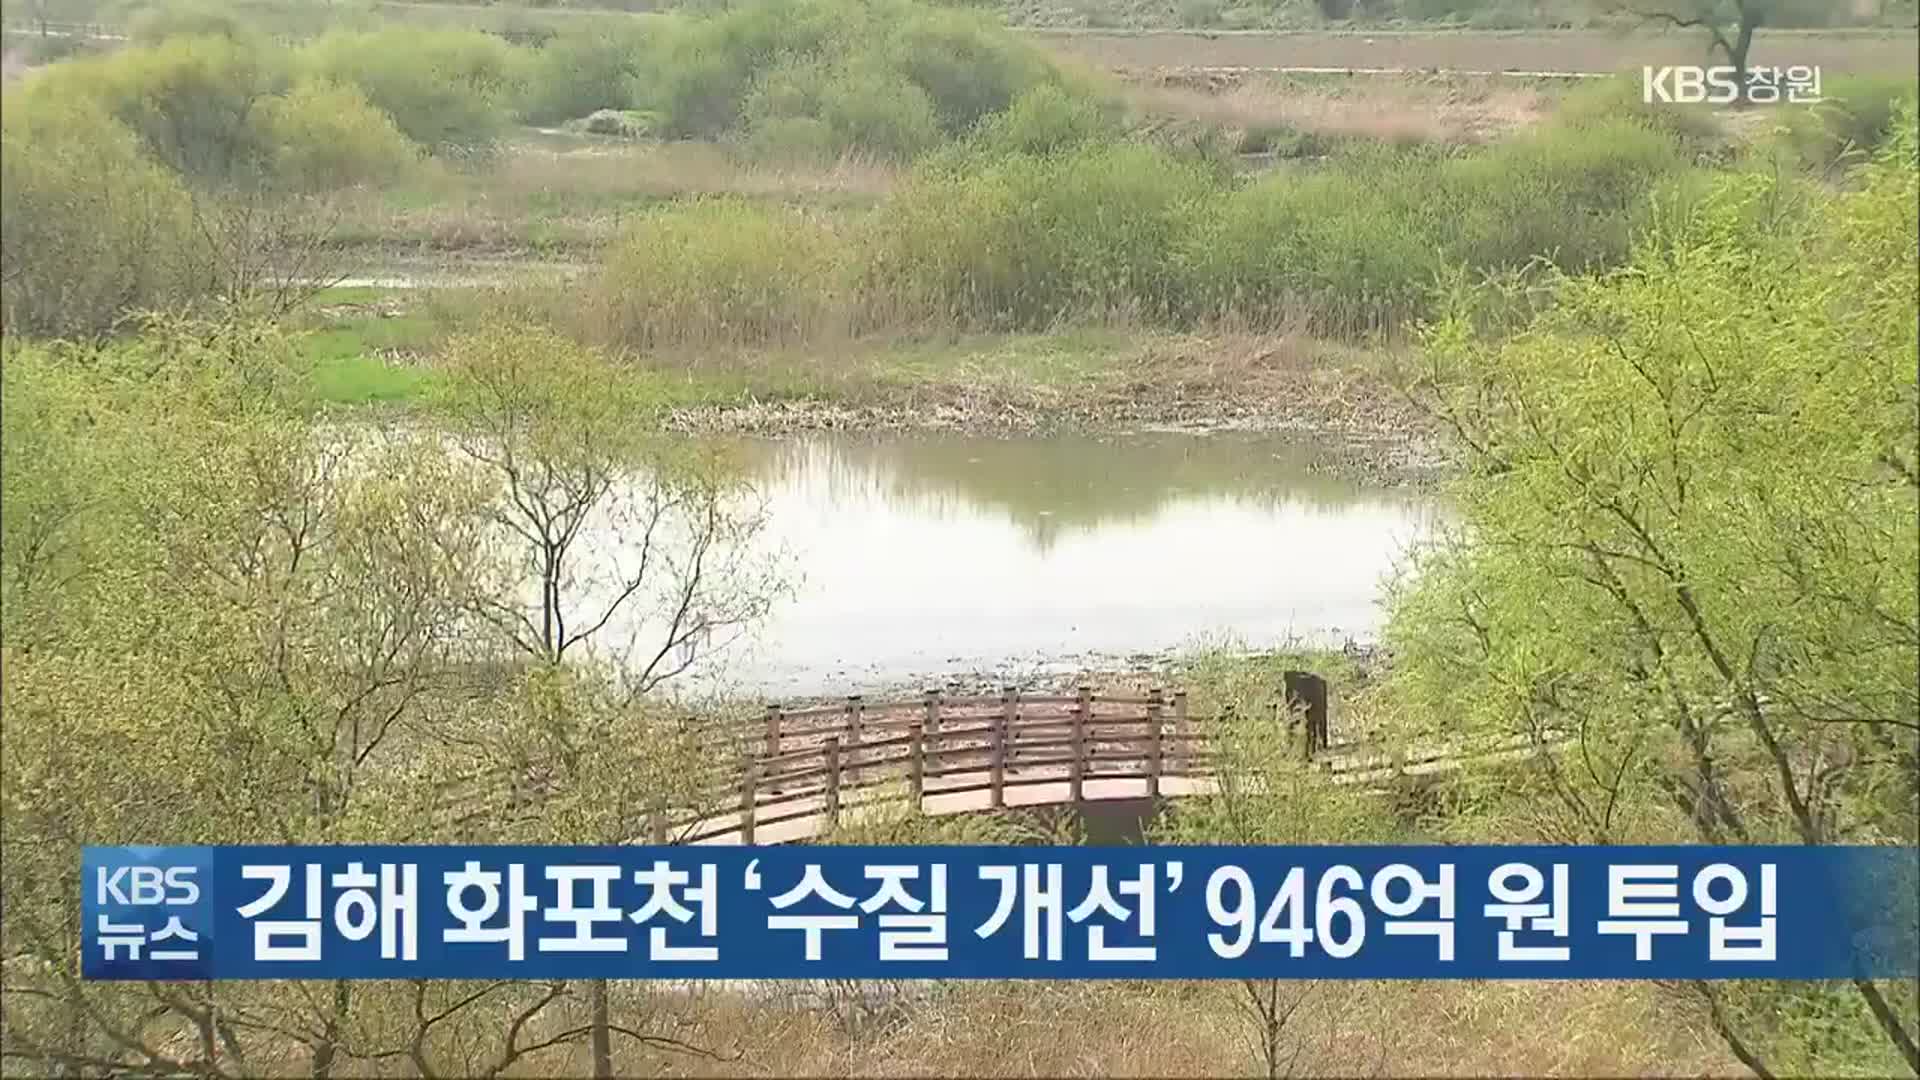 김해 화포천 ‘수질 개선’ 946억 원 투입